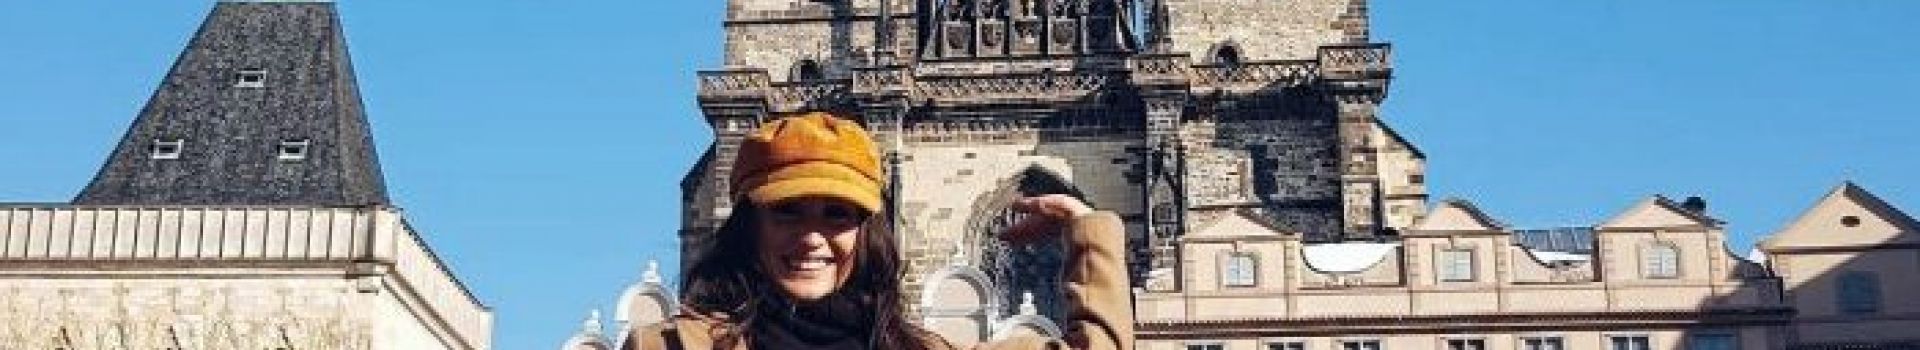 Prague city guide - Cassidy Travel Blog